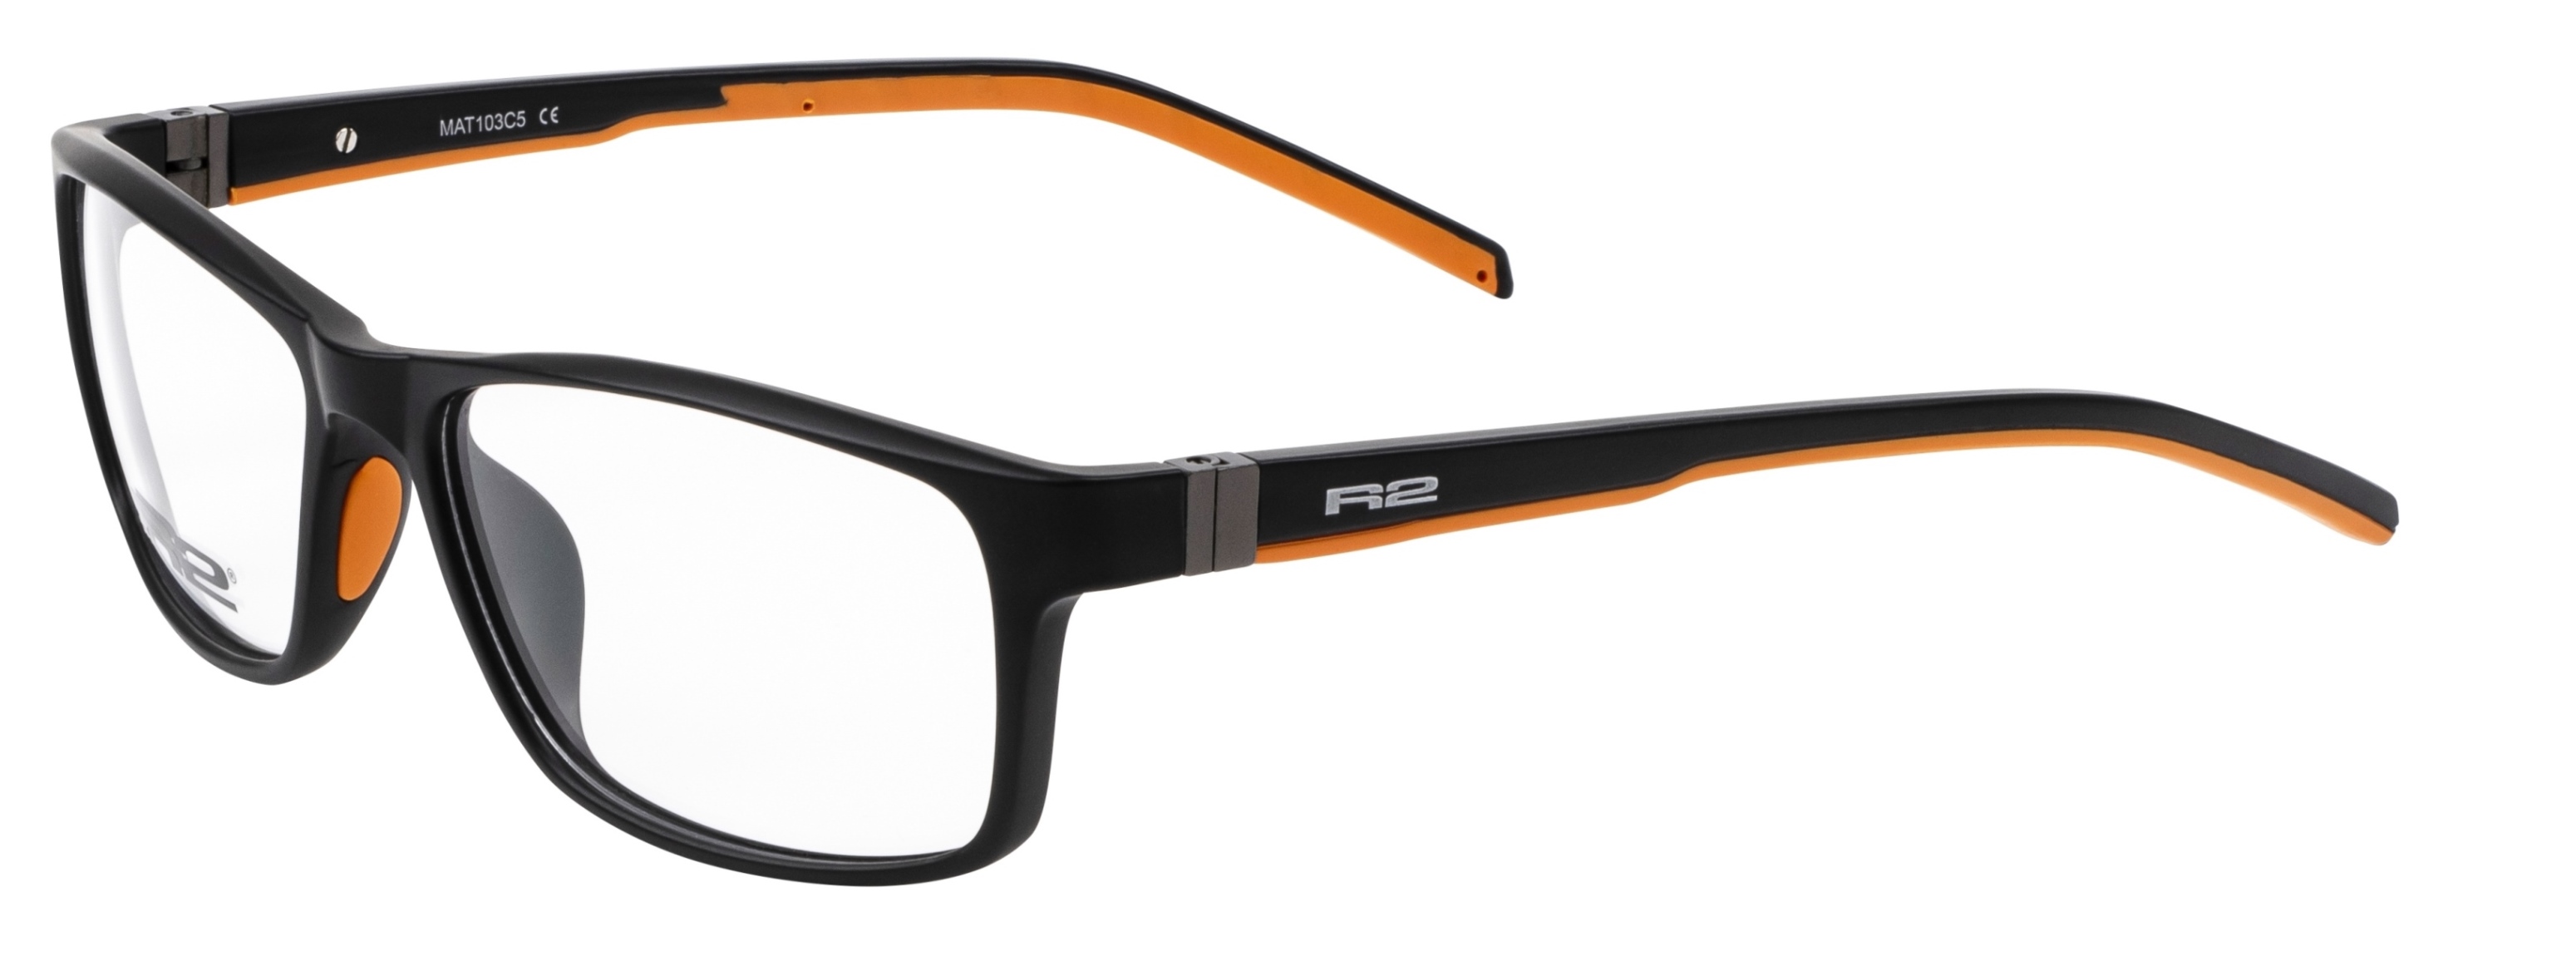 Sportovní dioptrické brýle R2 CLERIC MAT103C5 - standard